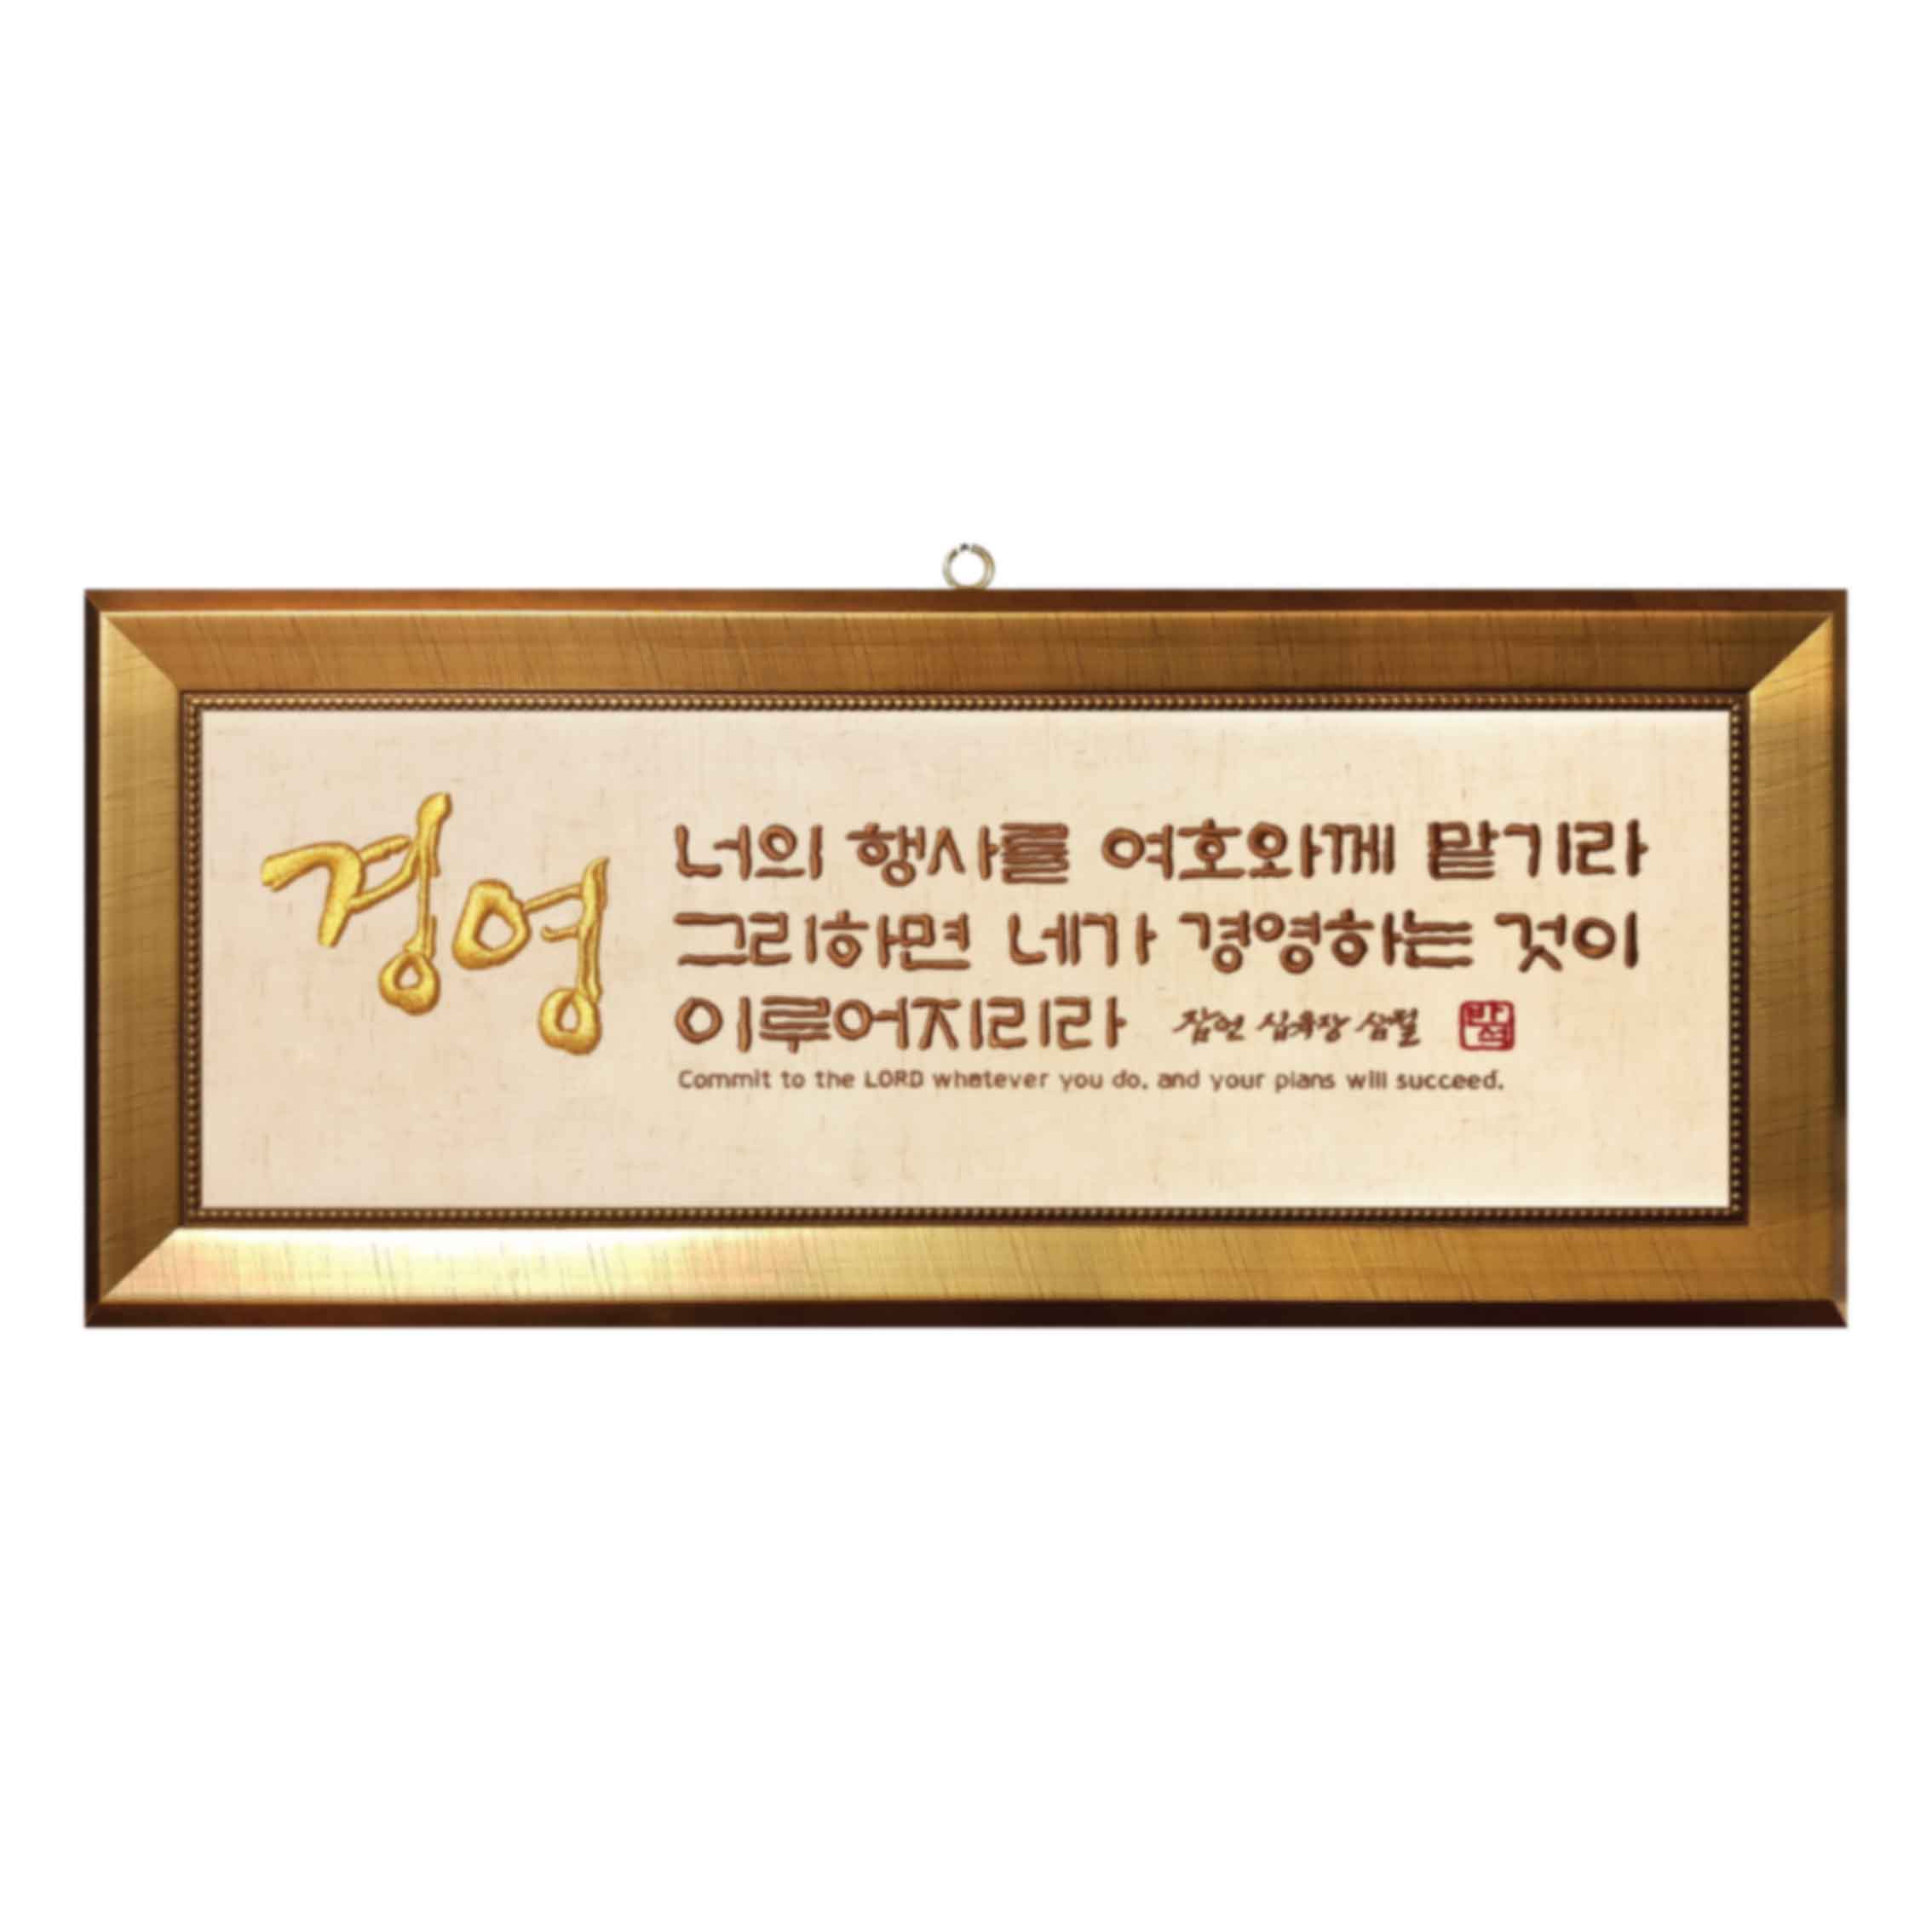 자수액자-행사(경영) size 730x300(벽걸이용)반석문화원